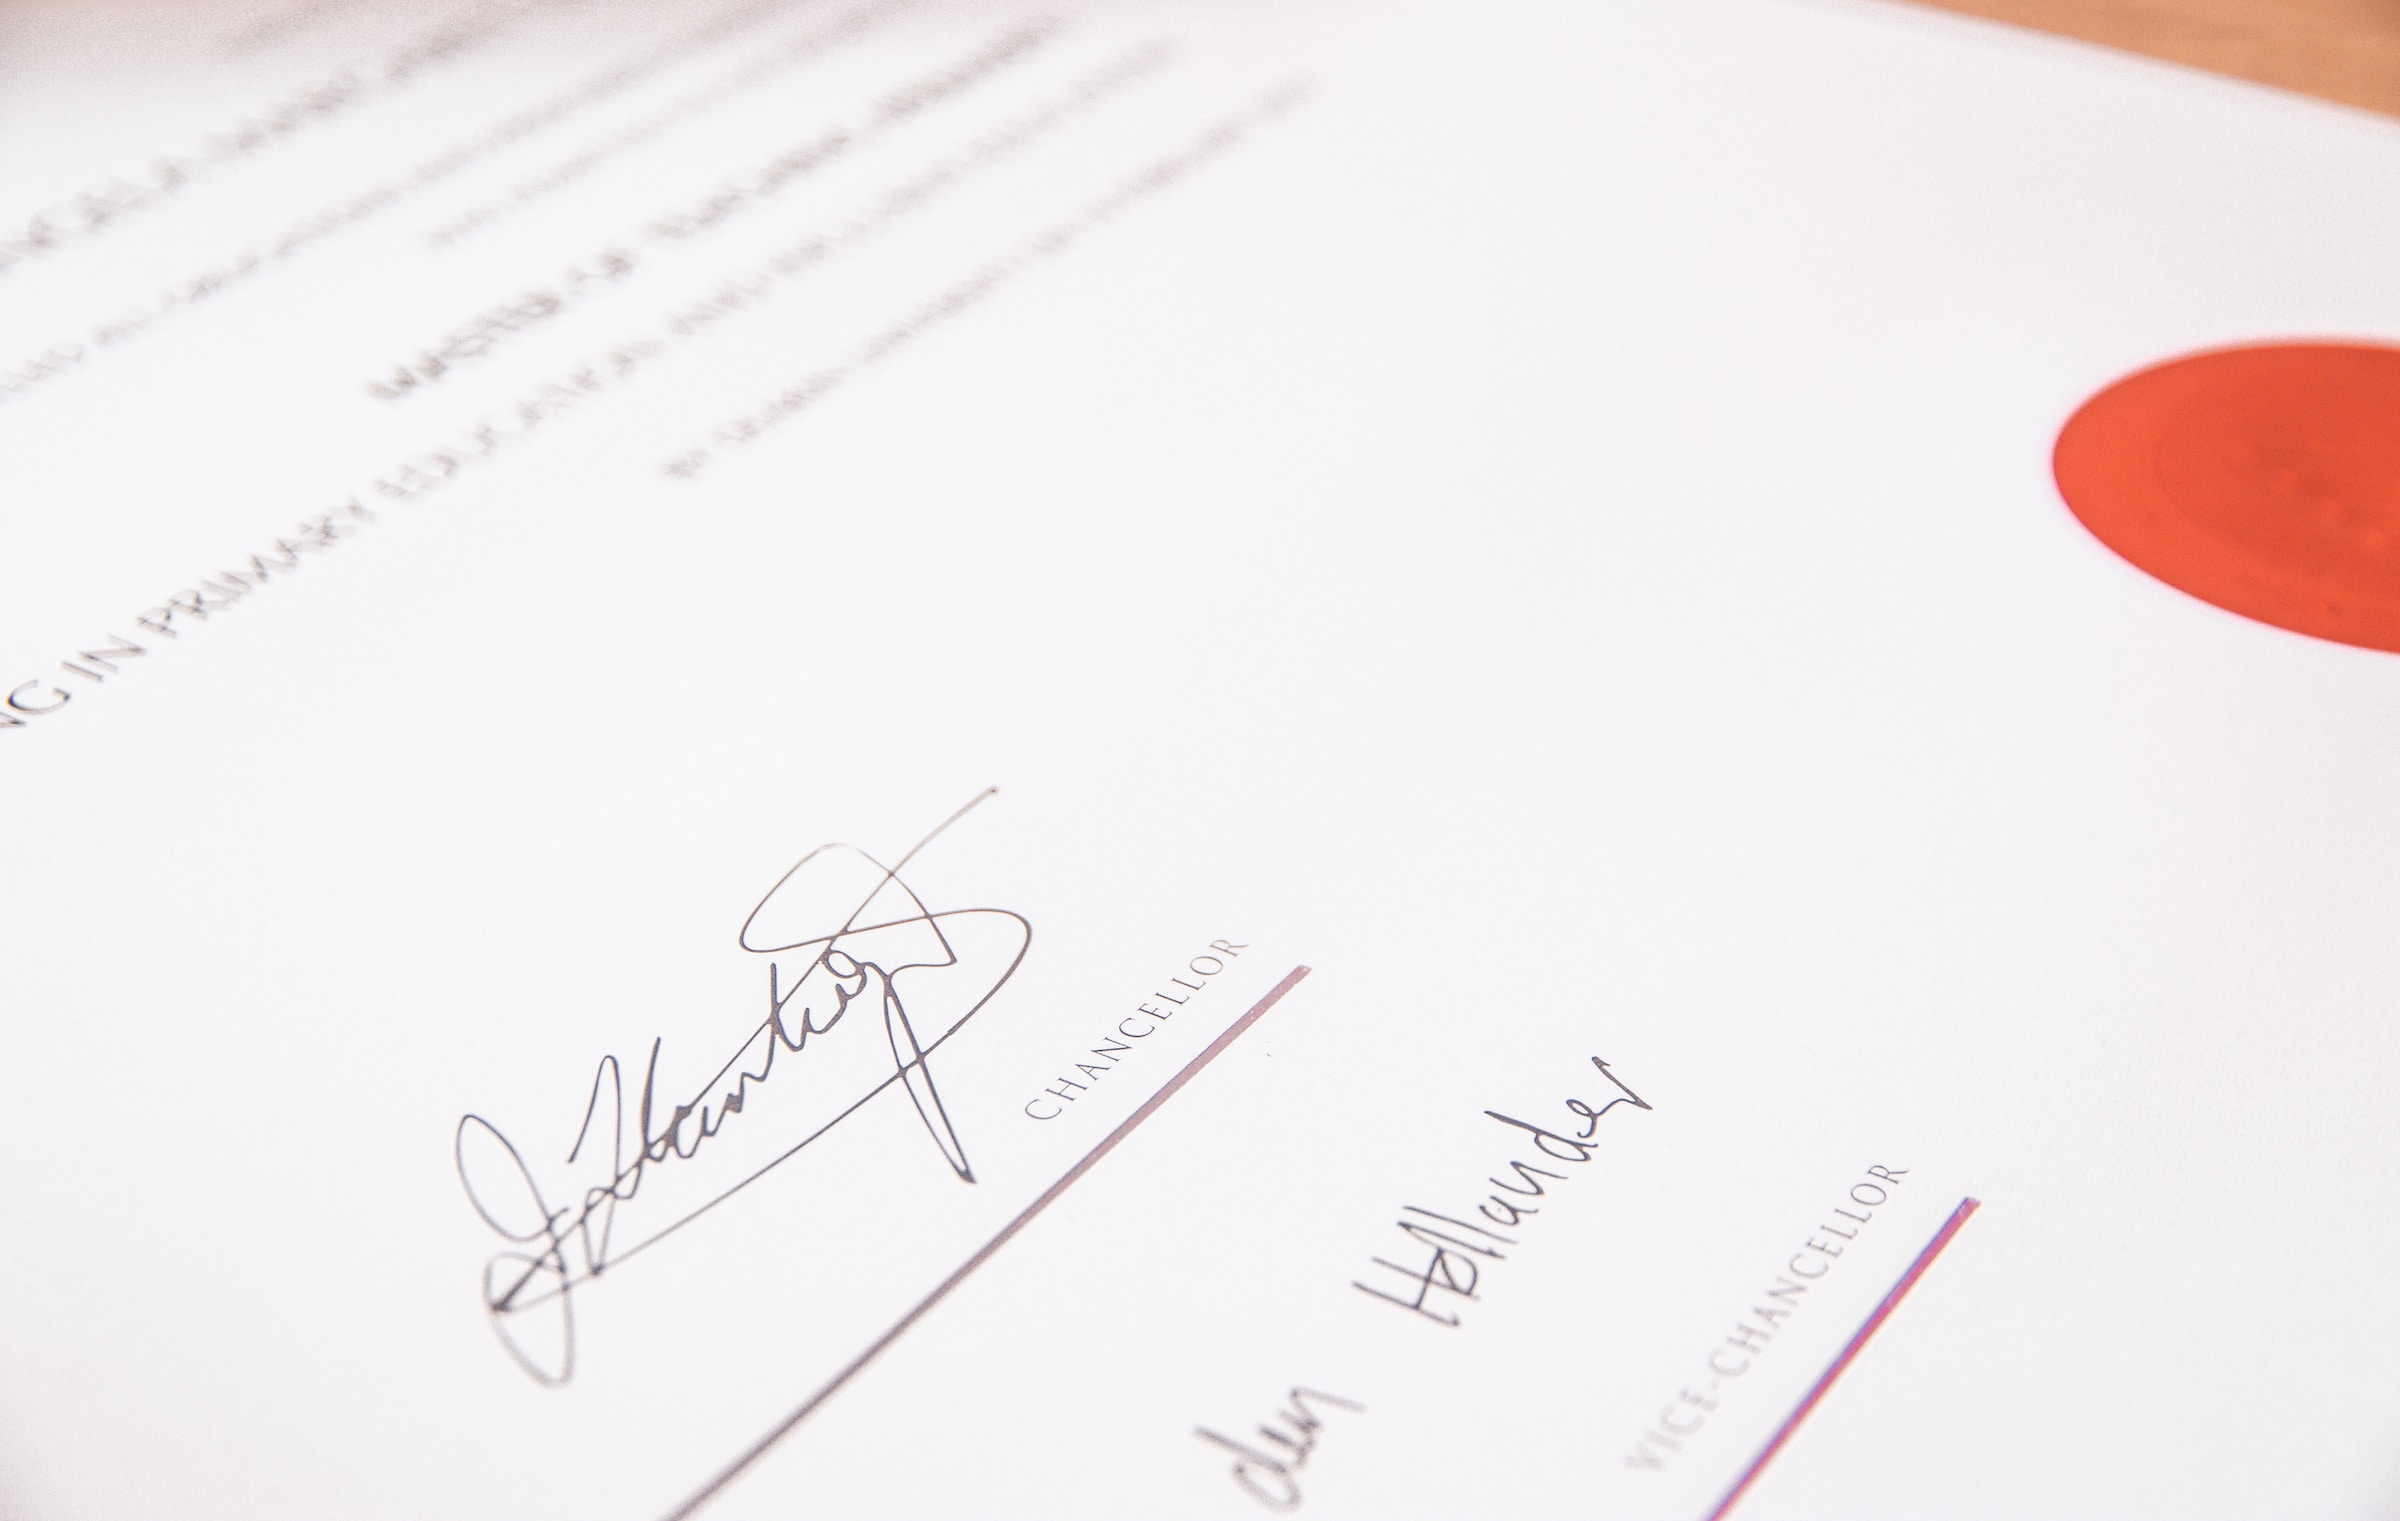 Rechtsformular mit Unterschriften | Quelle: Unsplash